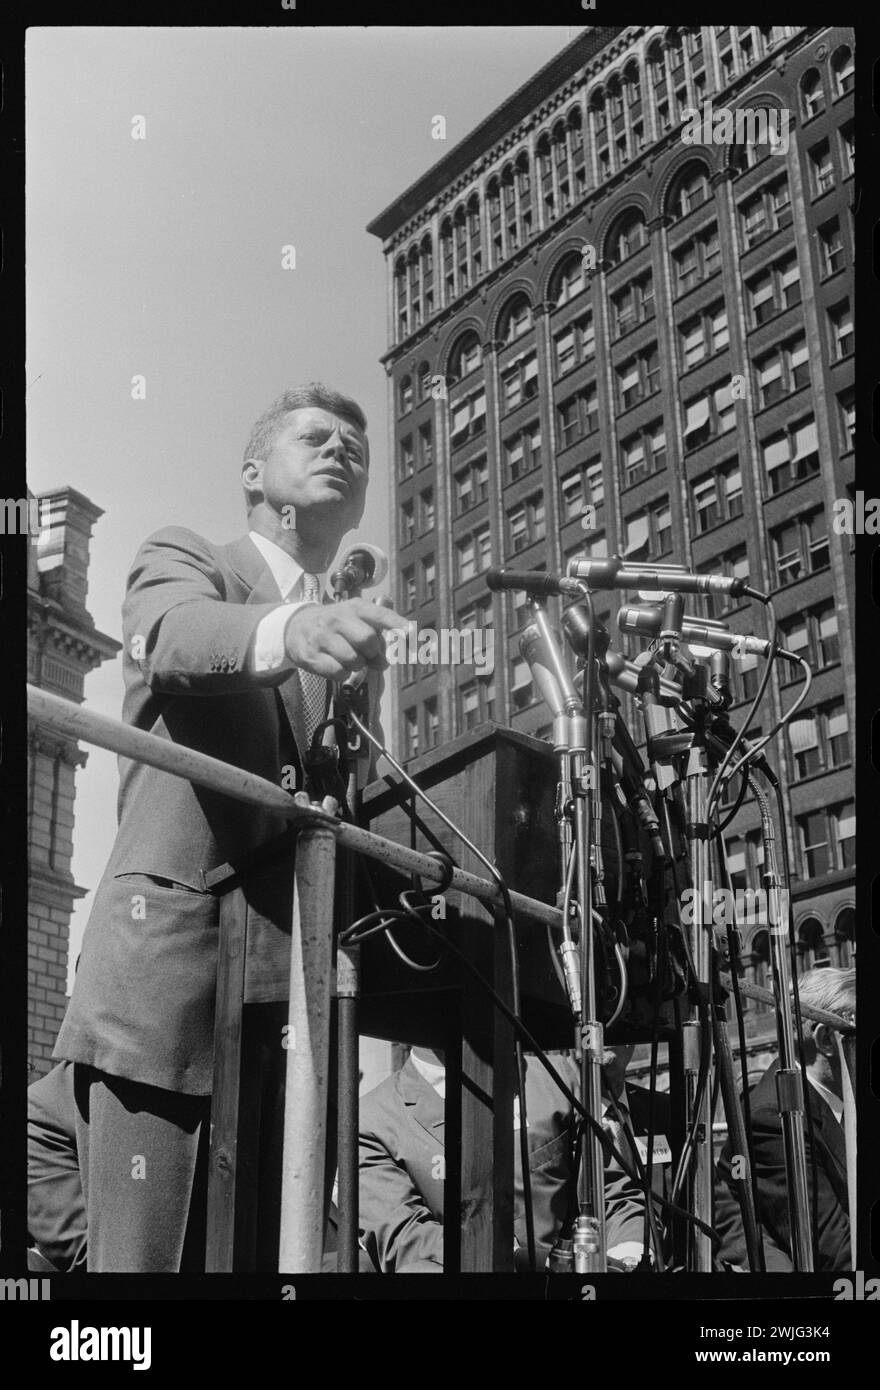 Le sénateur John F. Kennedy s'exprimant lors d'un rassemblement le jour de la fête du travail à Cadillac Square pendant sa campagne présidentielle, 9/6/1960, Detroit, Michigan. (Photo de Thomas O'Halloran/US News and World Report Magazine Collection) Banque D'Images